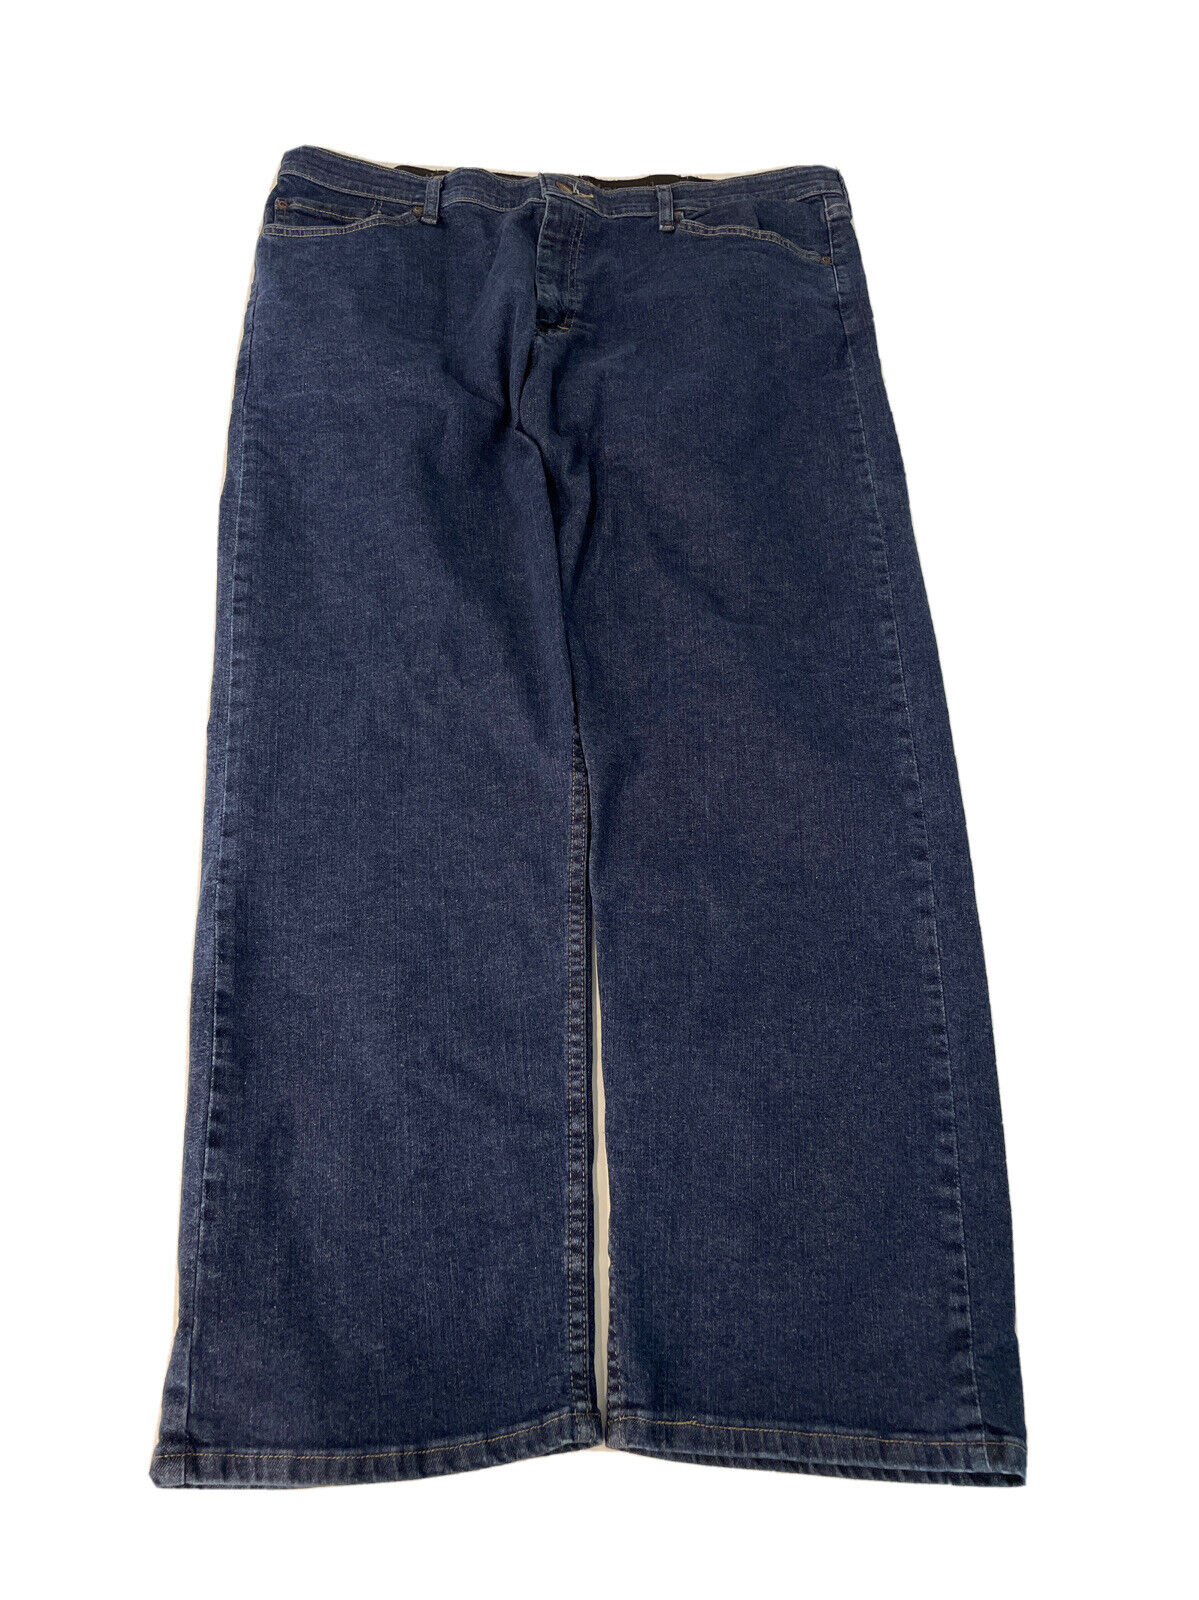 Wrangler 38x29 mens dark blue Jeans Excellent, store return/ Pilling on  pocket f | eBay